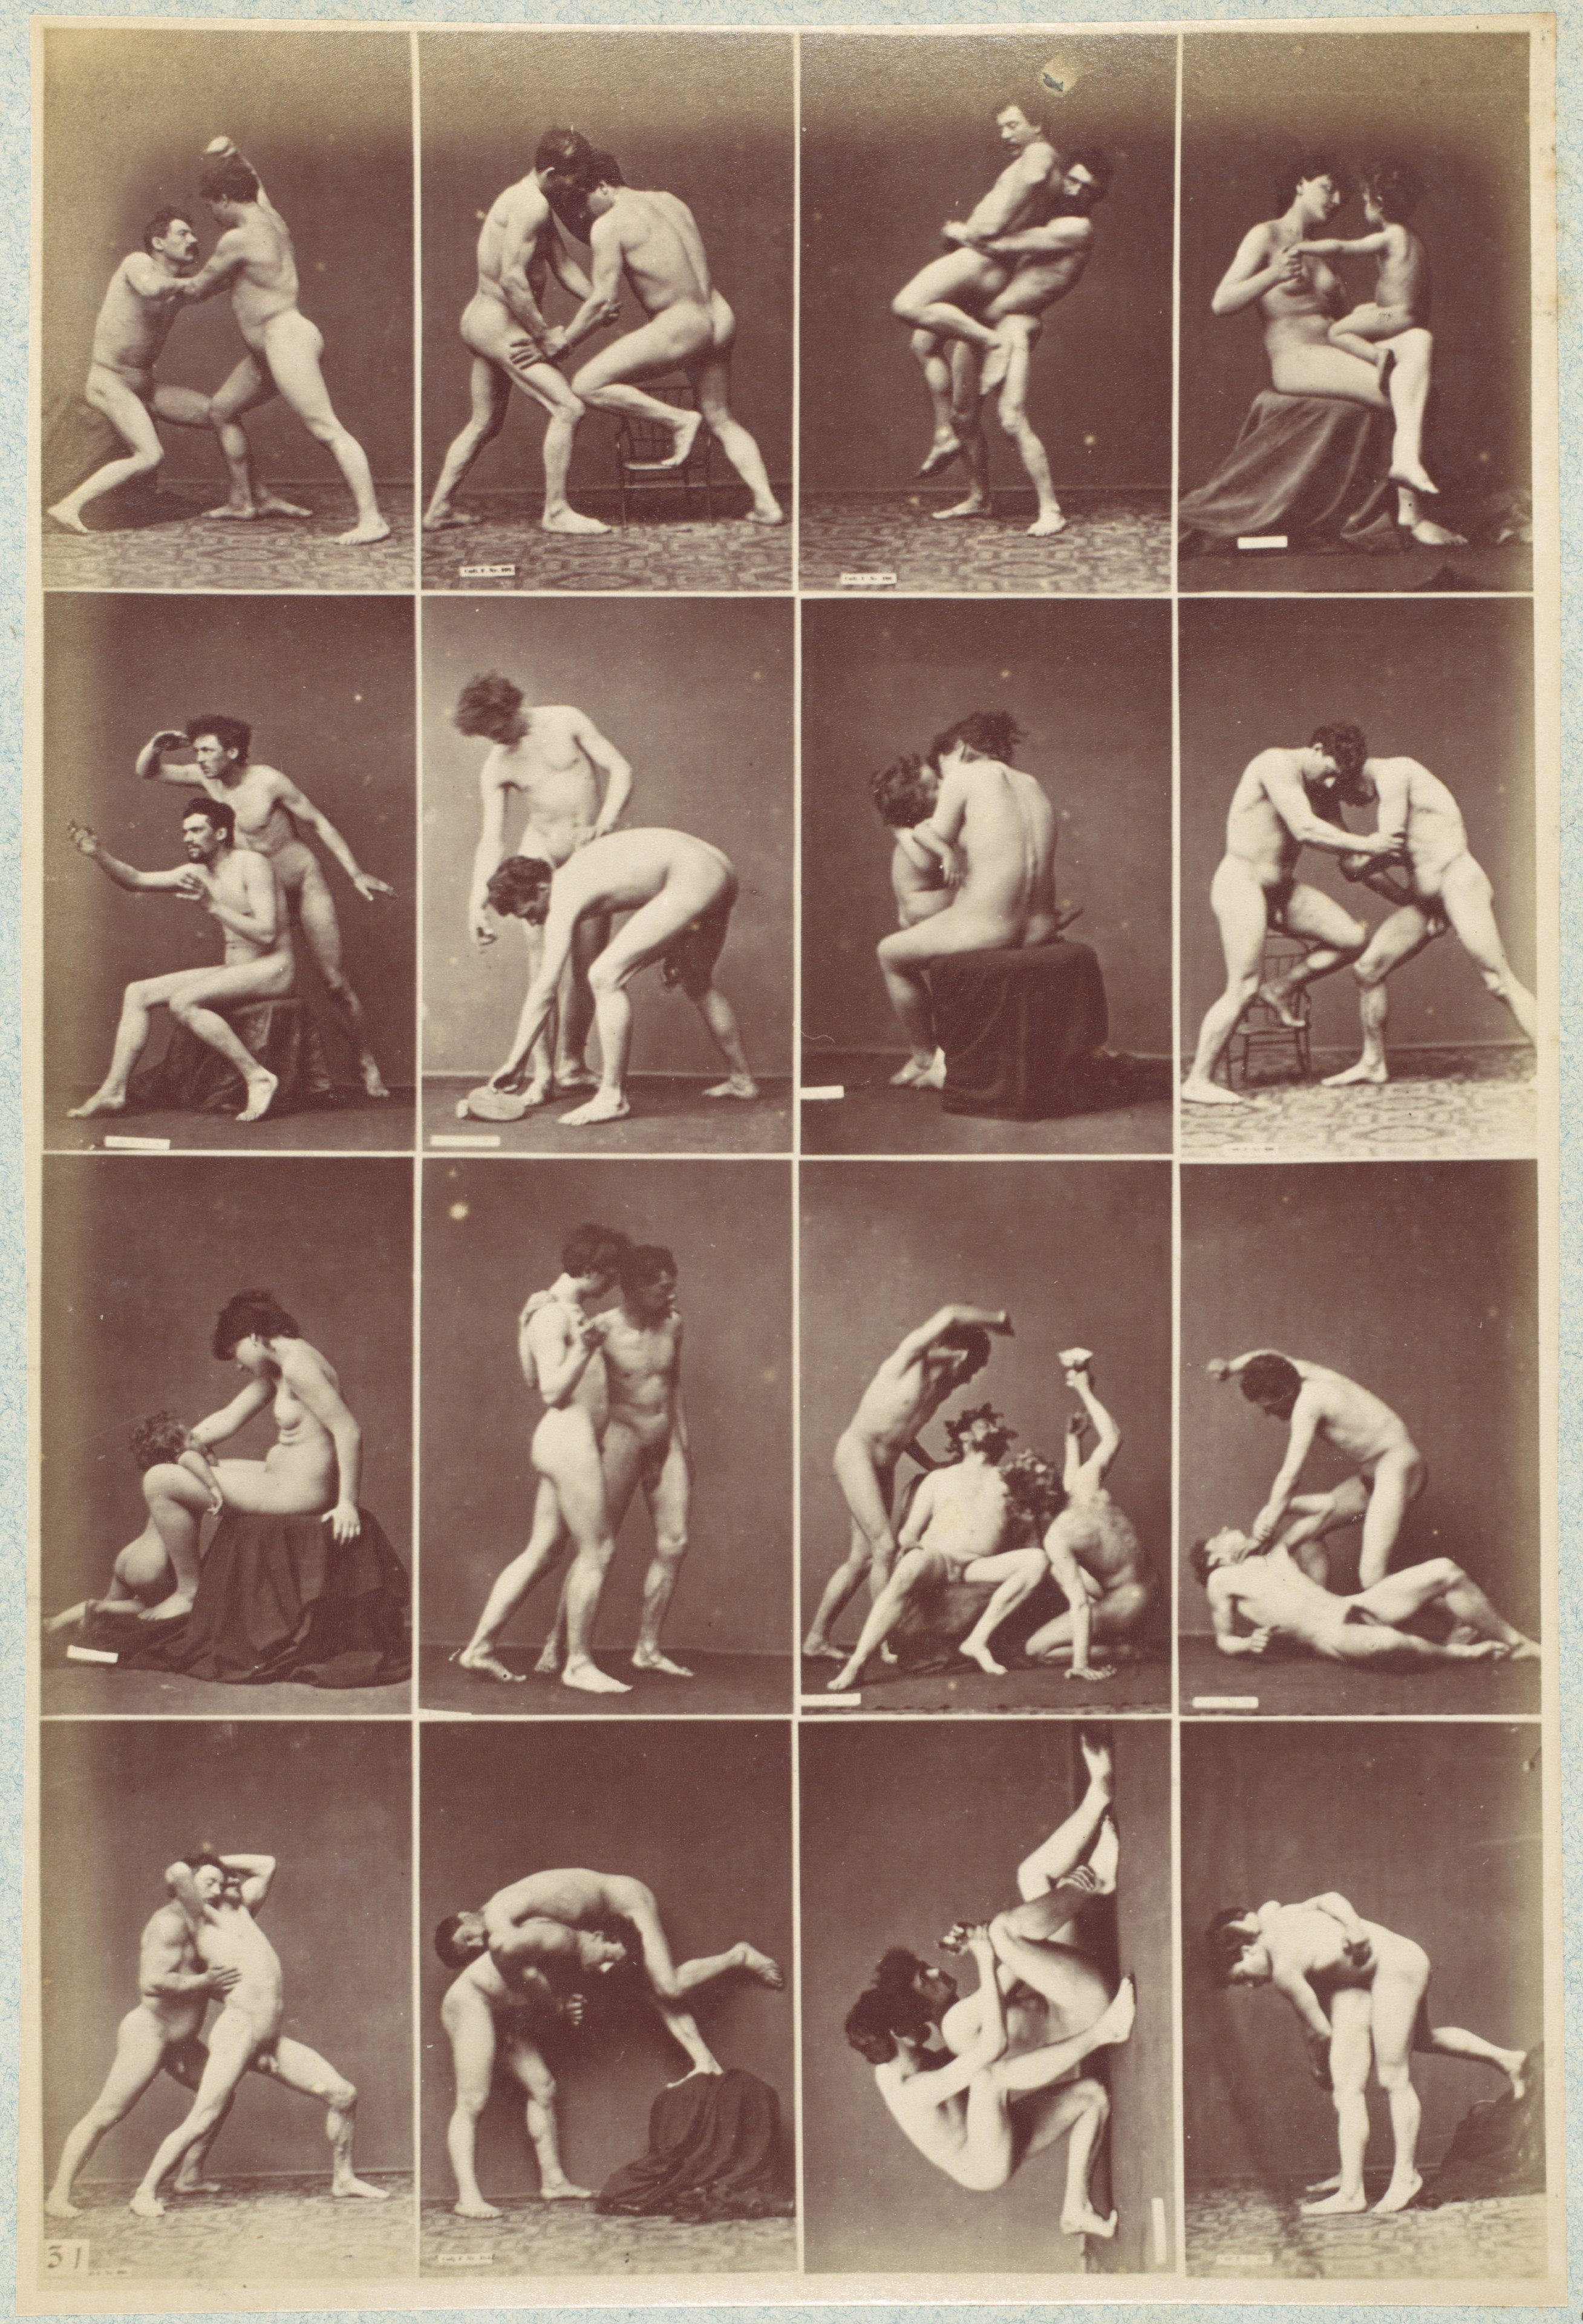 Из фотоальбома Исследования поз, 1880. Автор Луи Игут